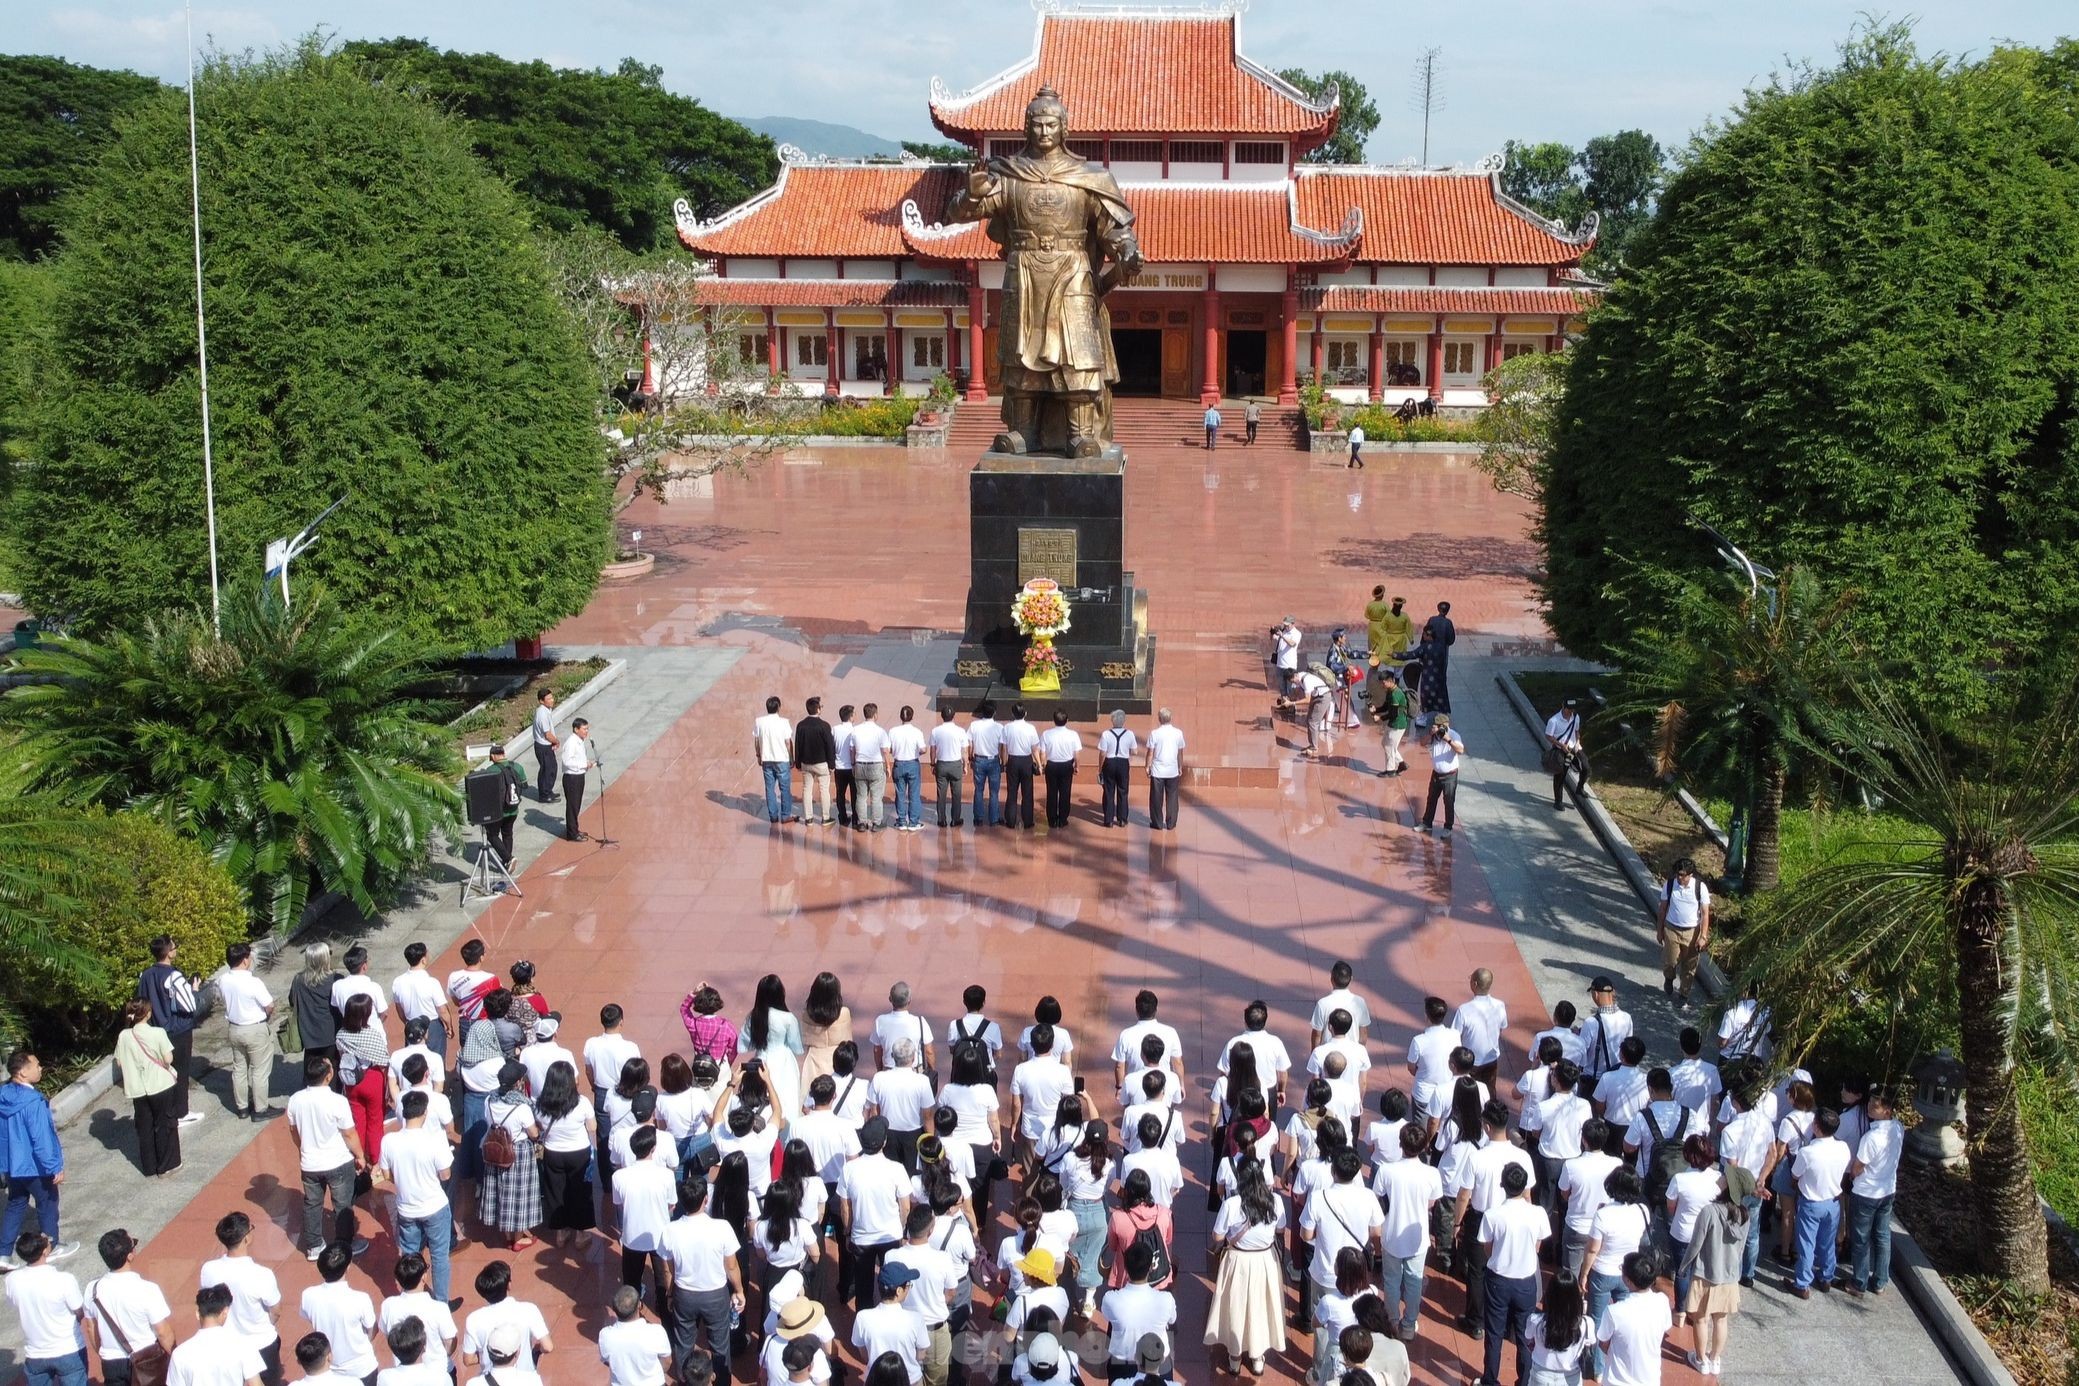 Tập thể cán bộ, phóng viên, nhân viên báo Tiền Phong dâng hương tưởng nhớ vua Quang Trung tại miền đất võ